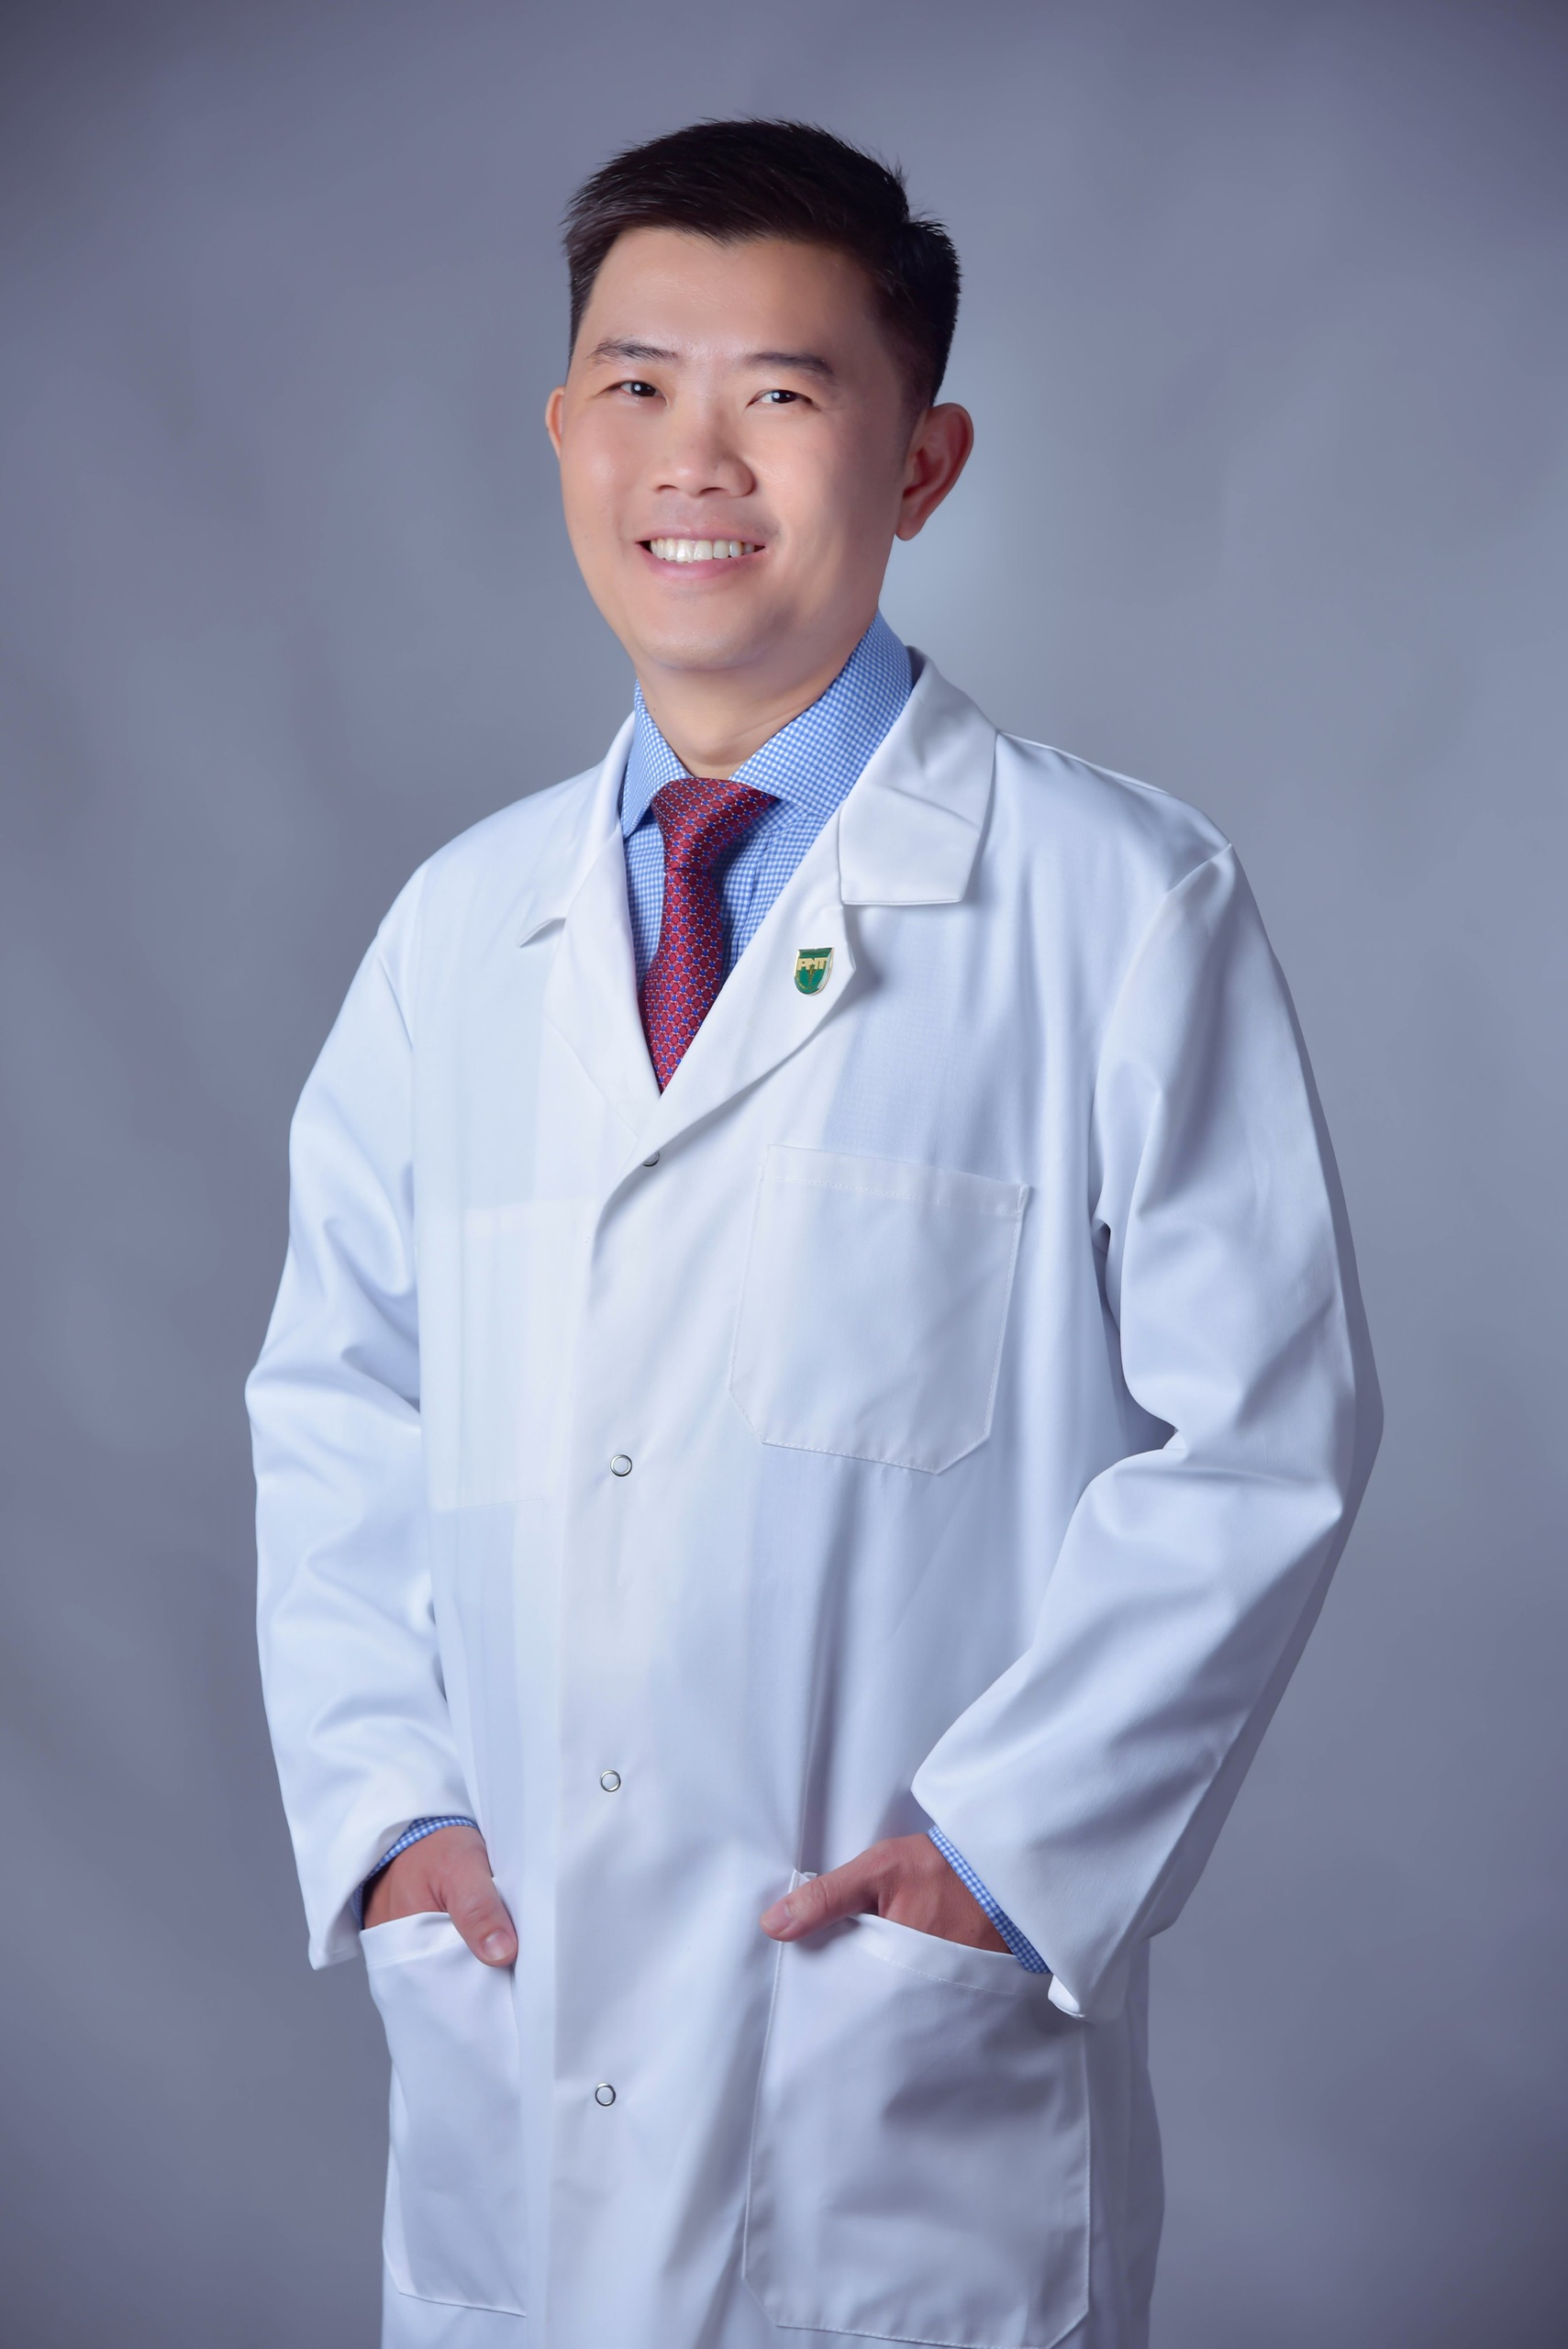 PGS.TS y khoa trẻ nhất Việt Nam ứng cử ĐBQH với đau đáu nỗi lo chăm sóc sức khỏe người dân - Ảnh 1.